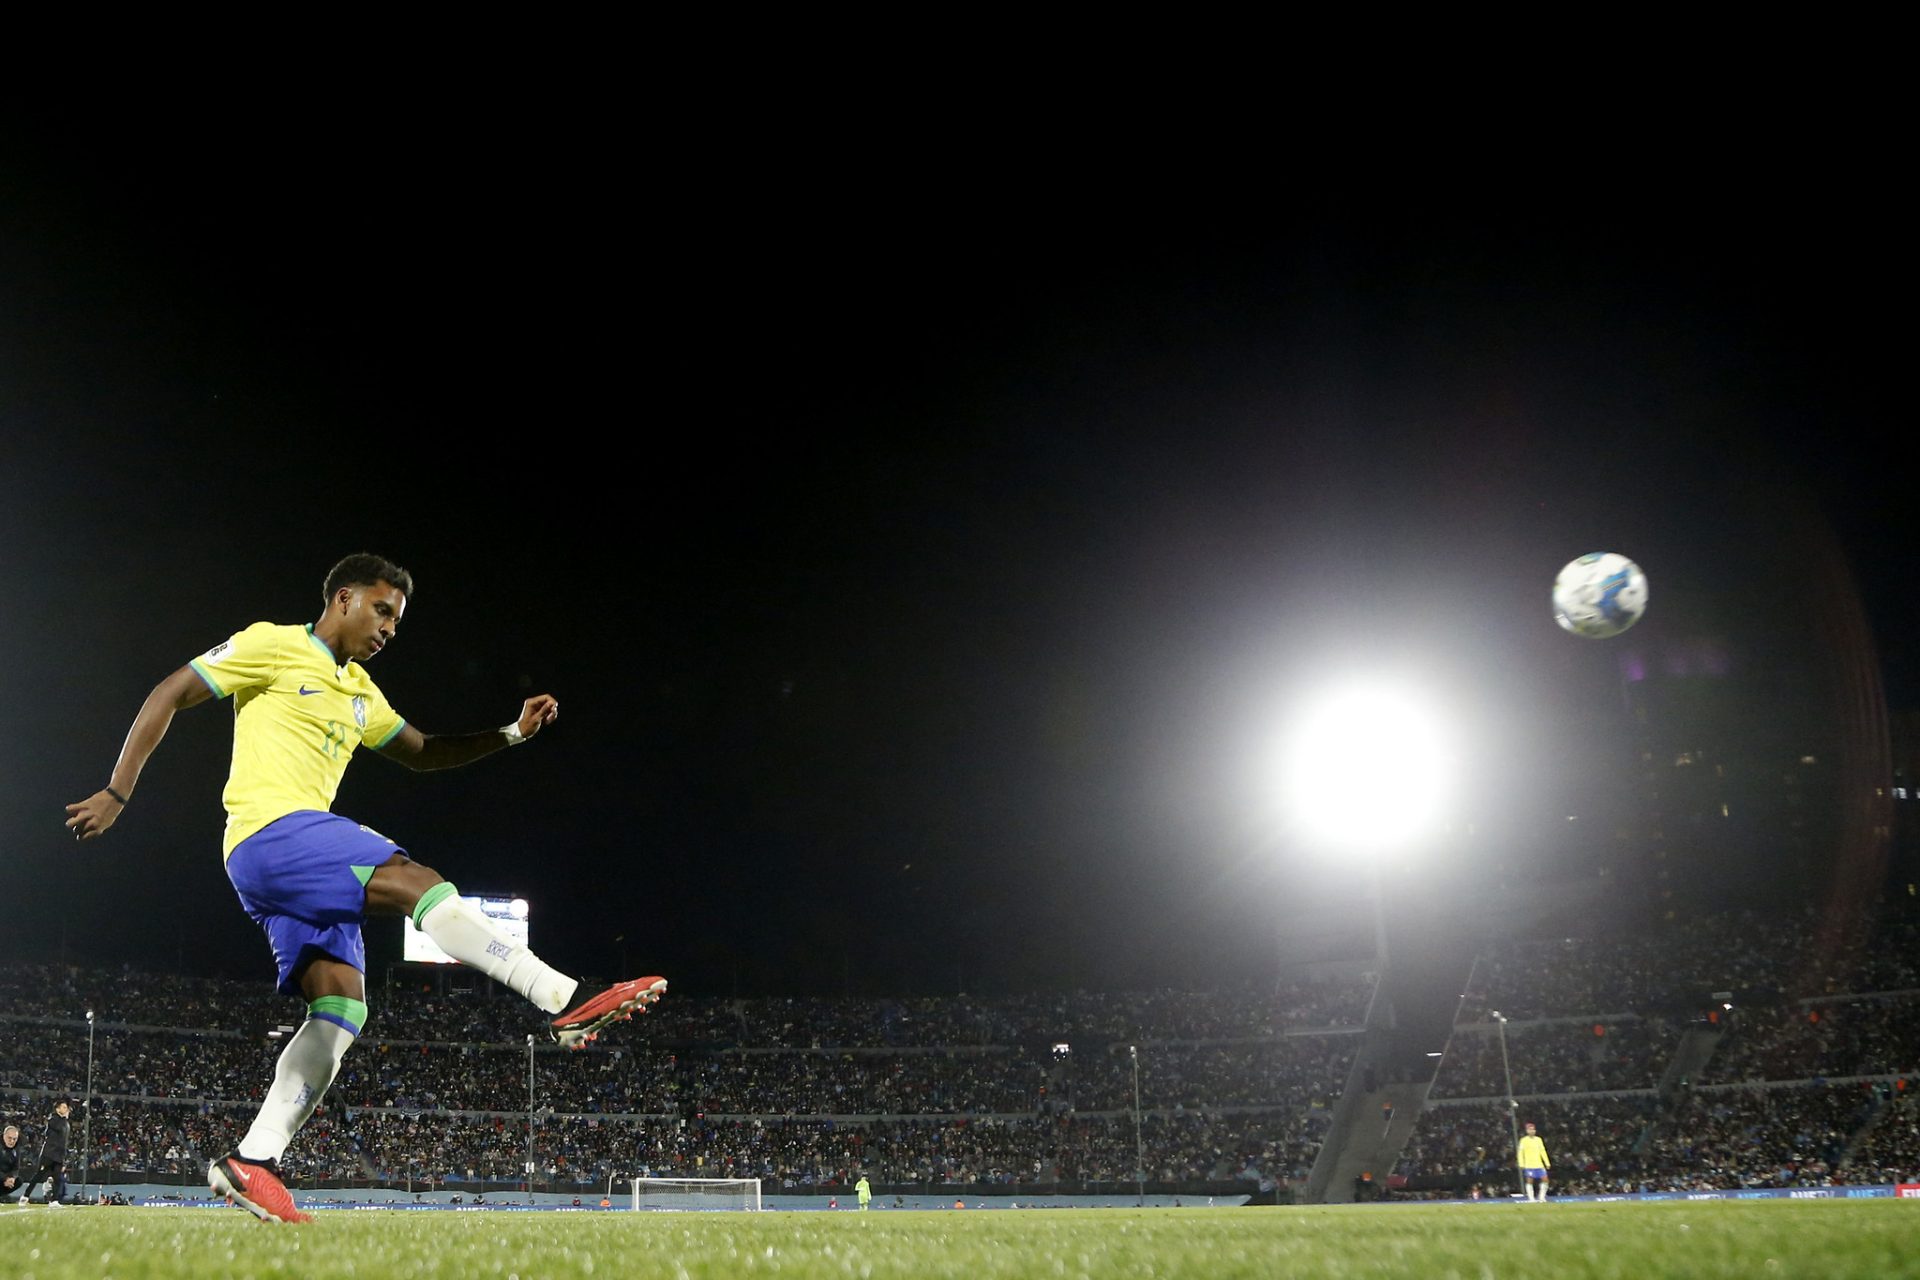 Seleção sem mantém no top 5 na atualização da Fifa - Foto: Reprodução/Vitor Silva/CBF